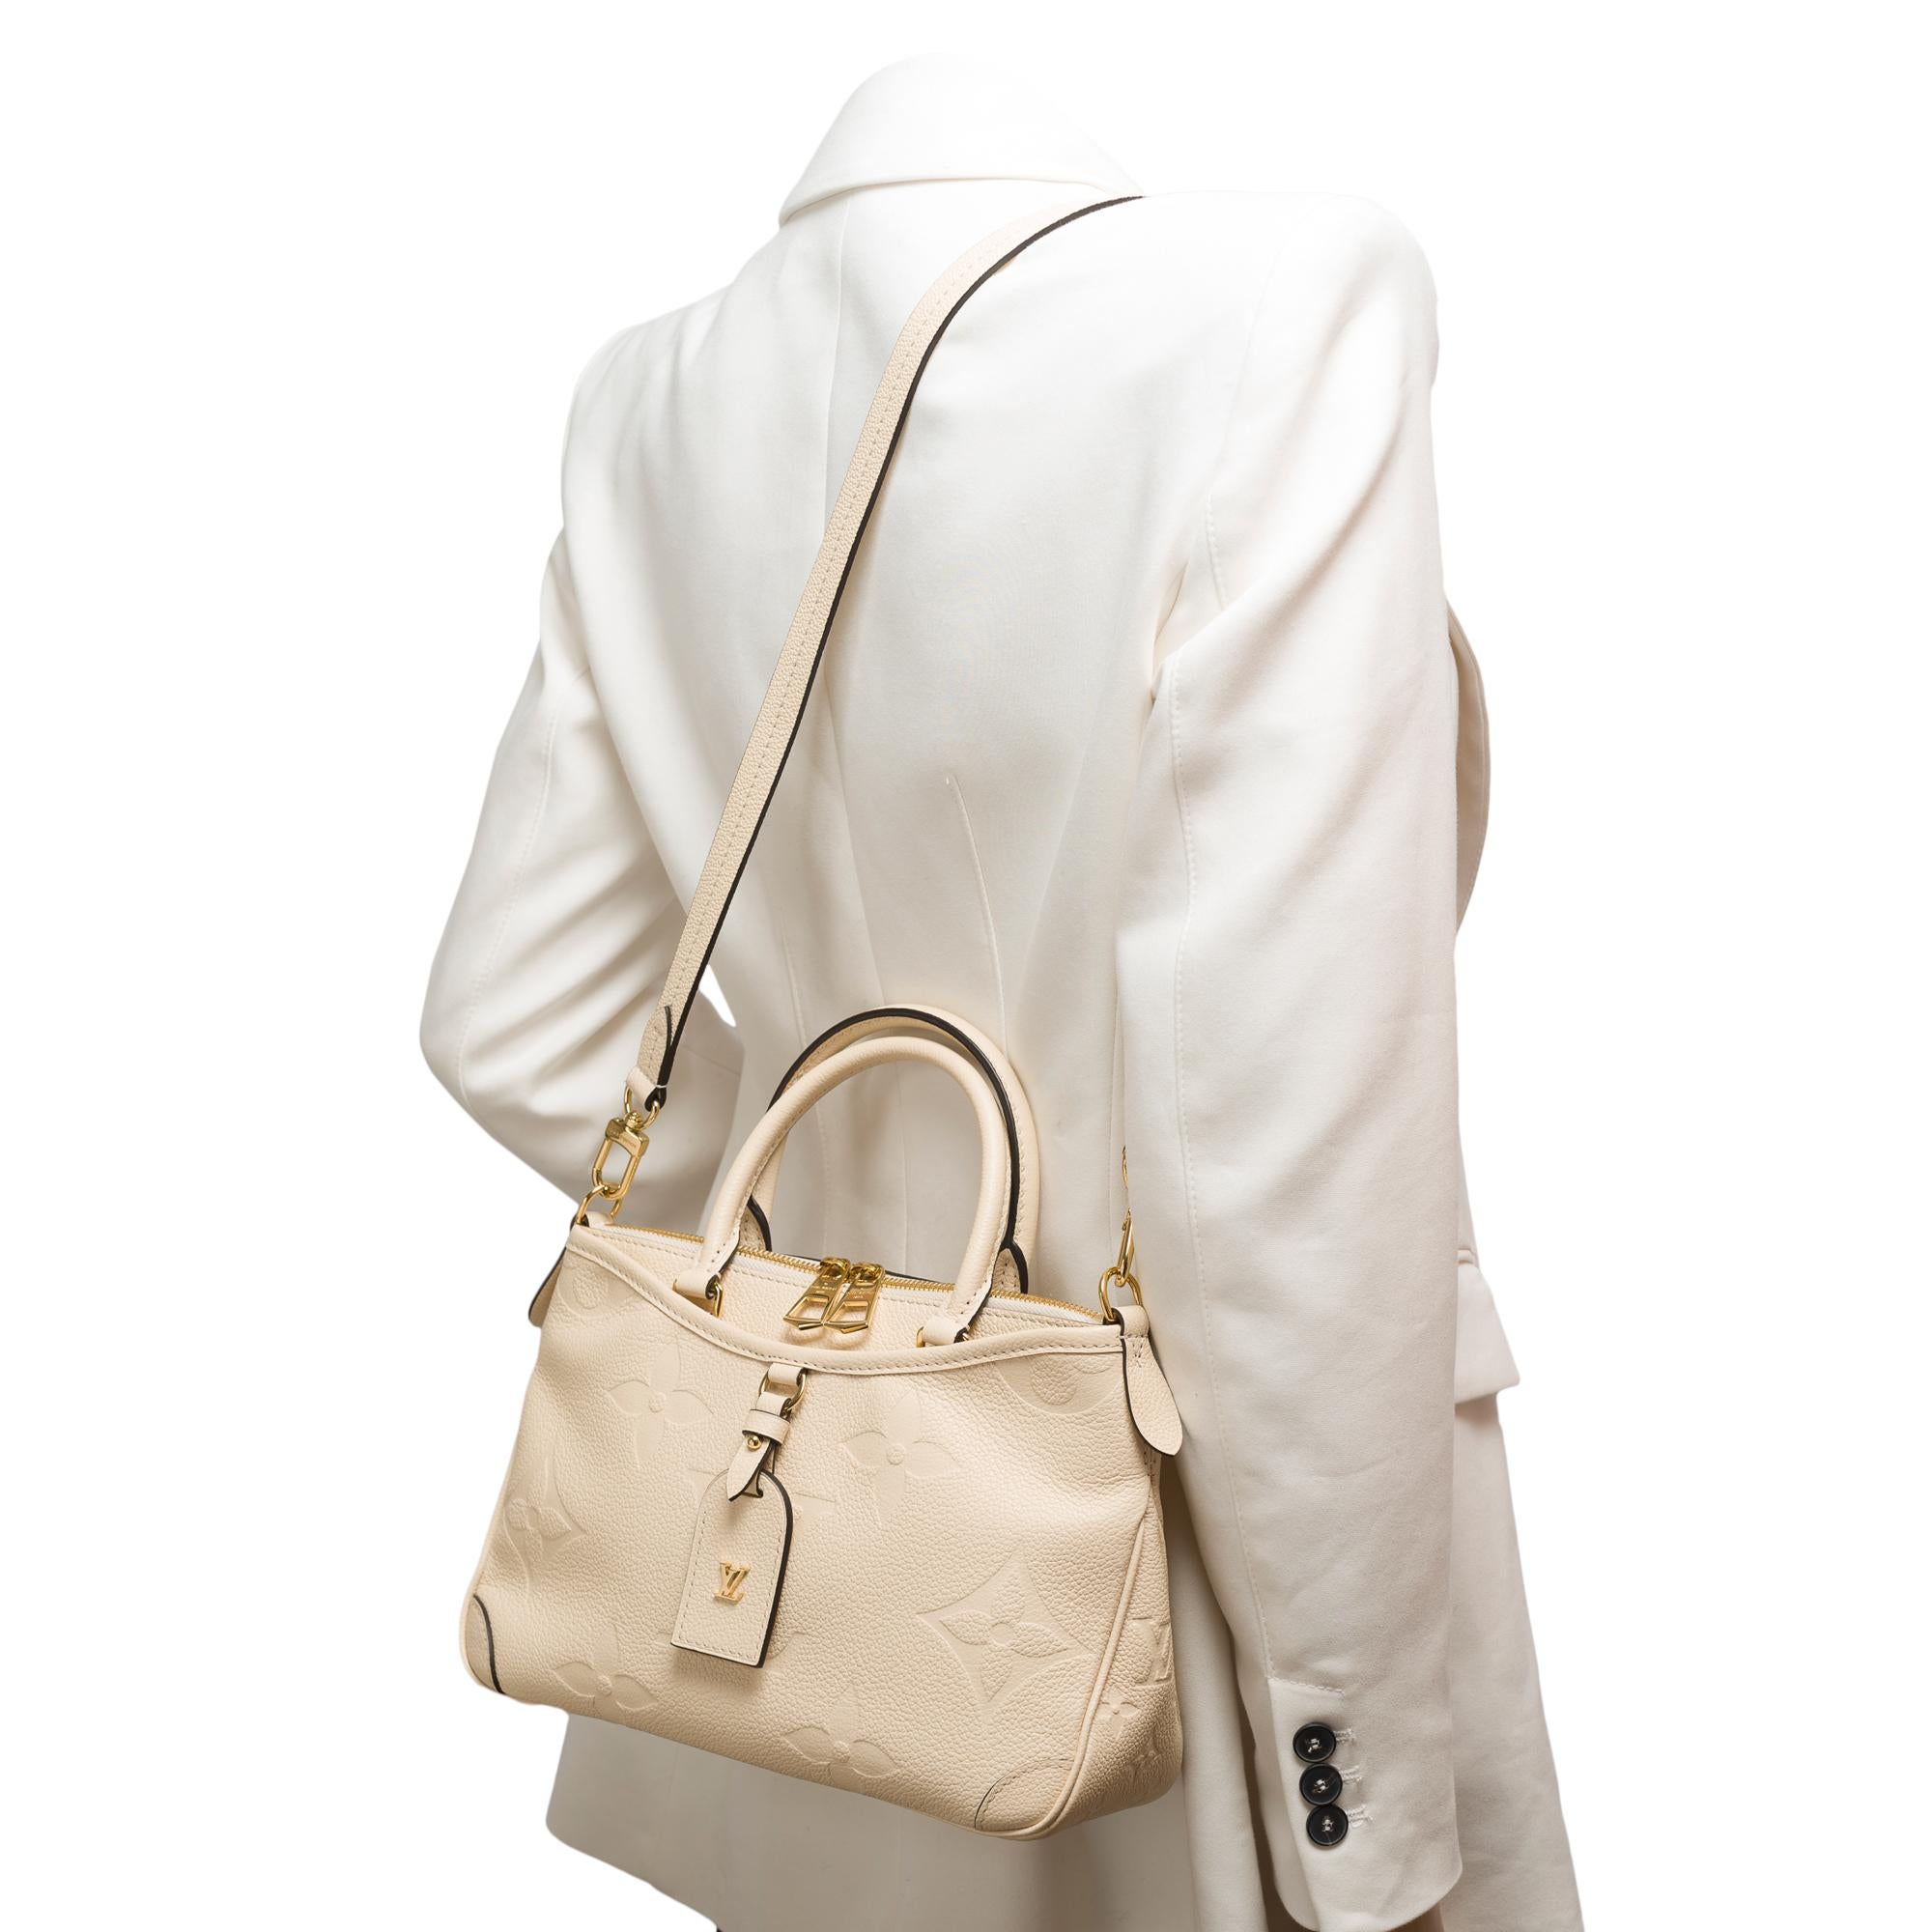 Louis Vuitton Trianon PM handbag strap in Cream White monogram calf leather, GHW For Sale 8